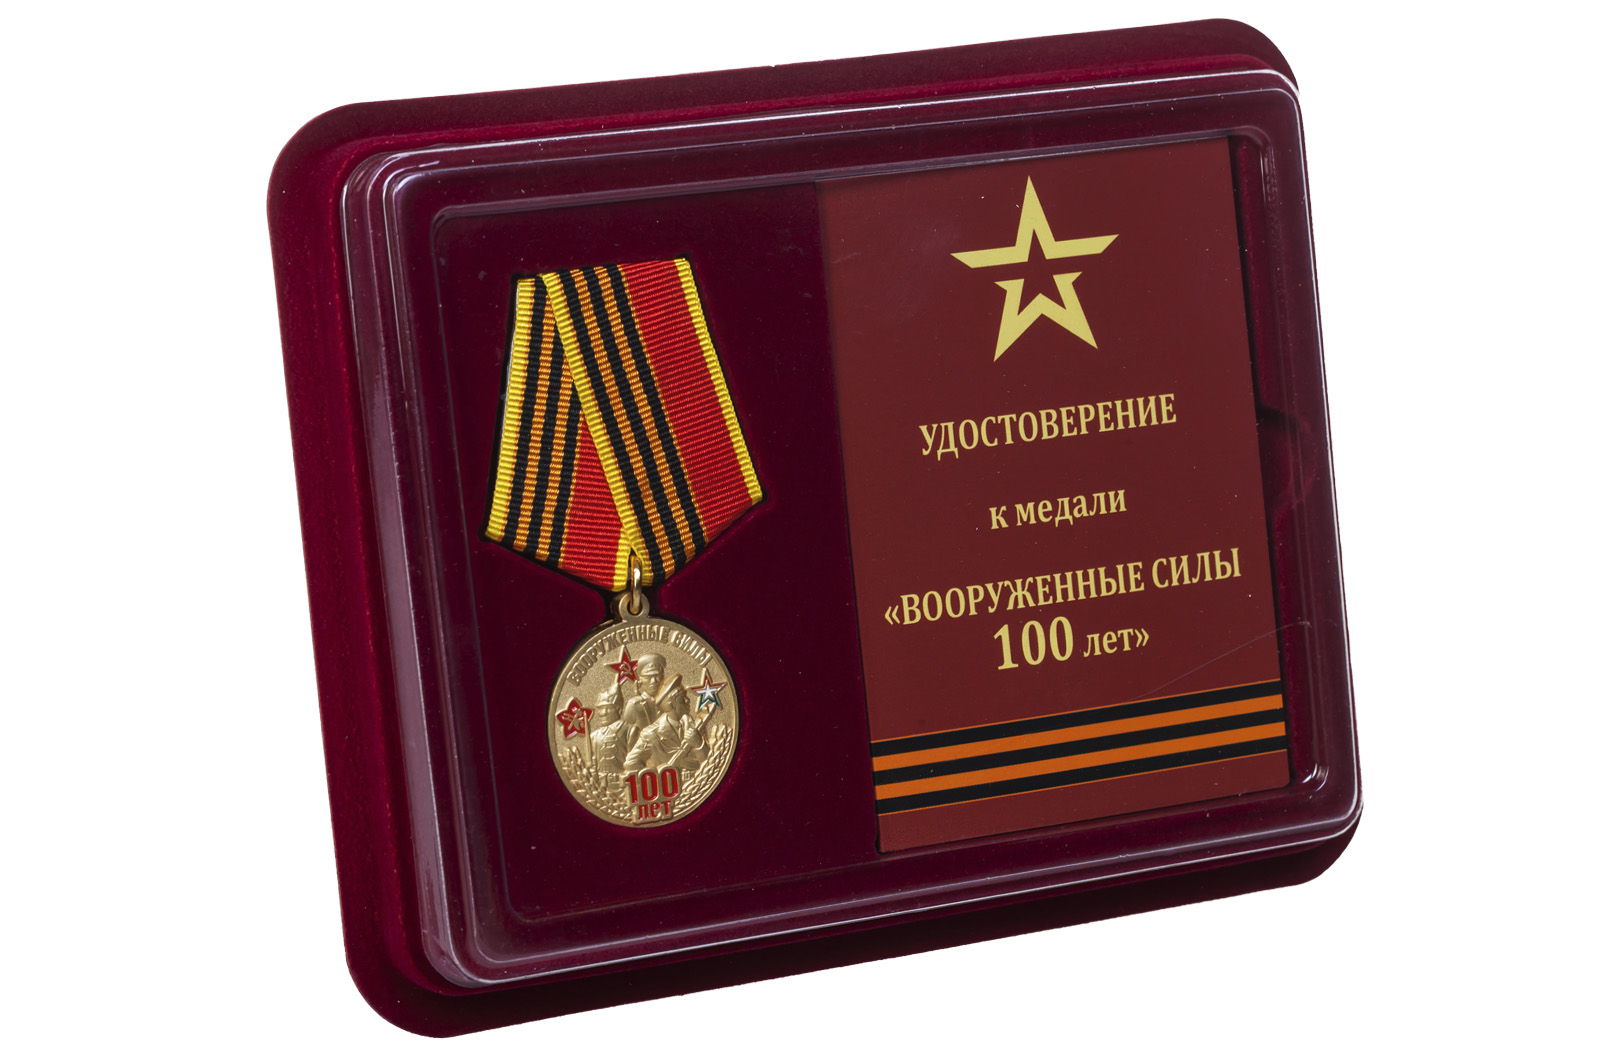 Купить памятную медаль 100-летие Вооруженных сил онлайн выгодно